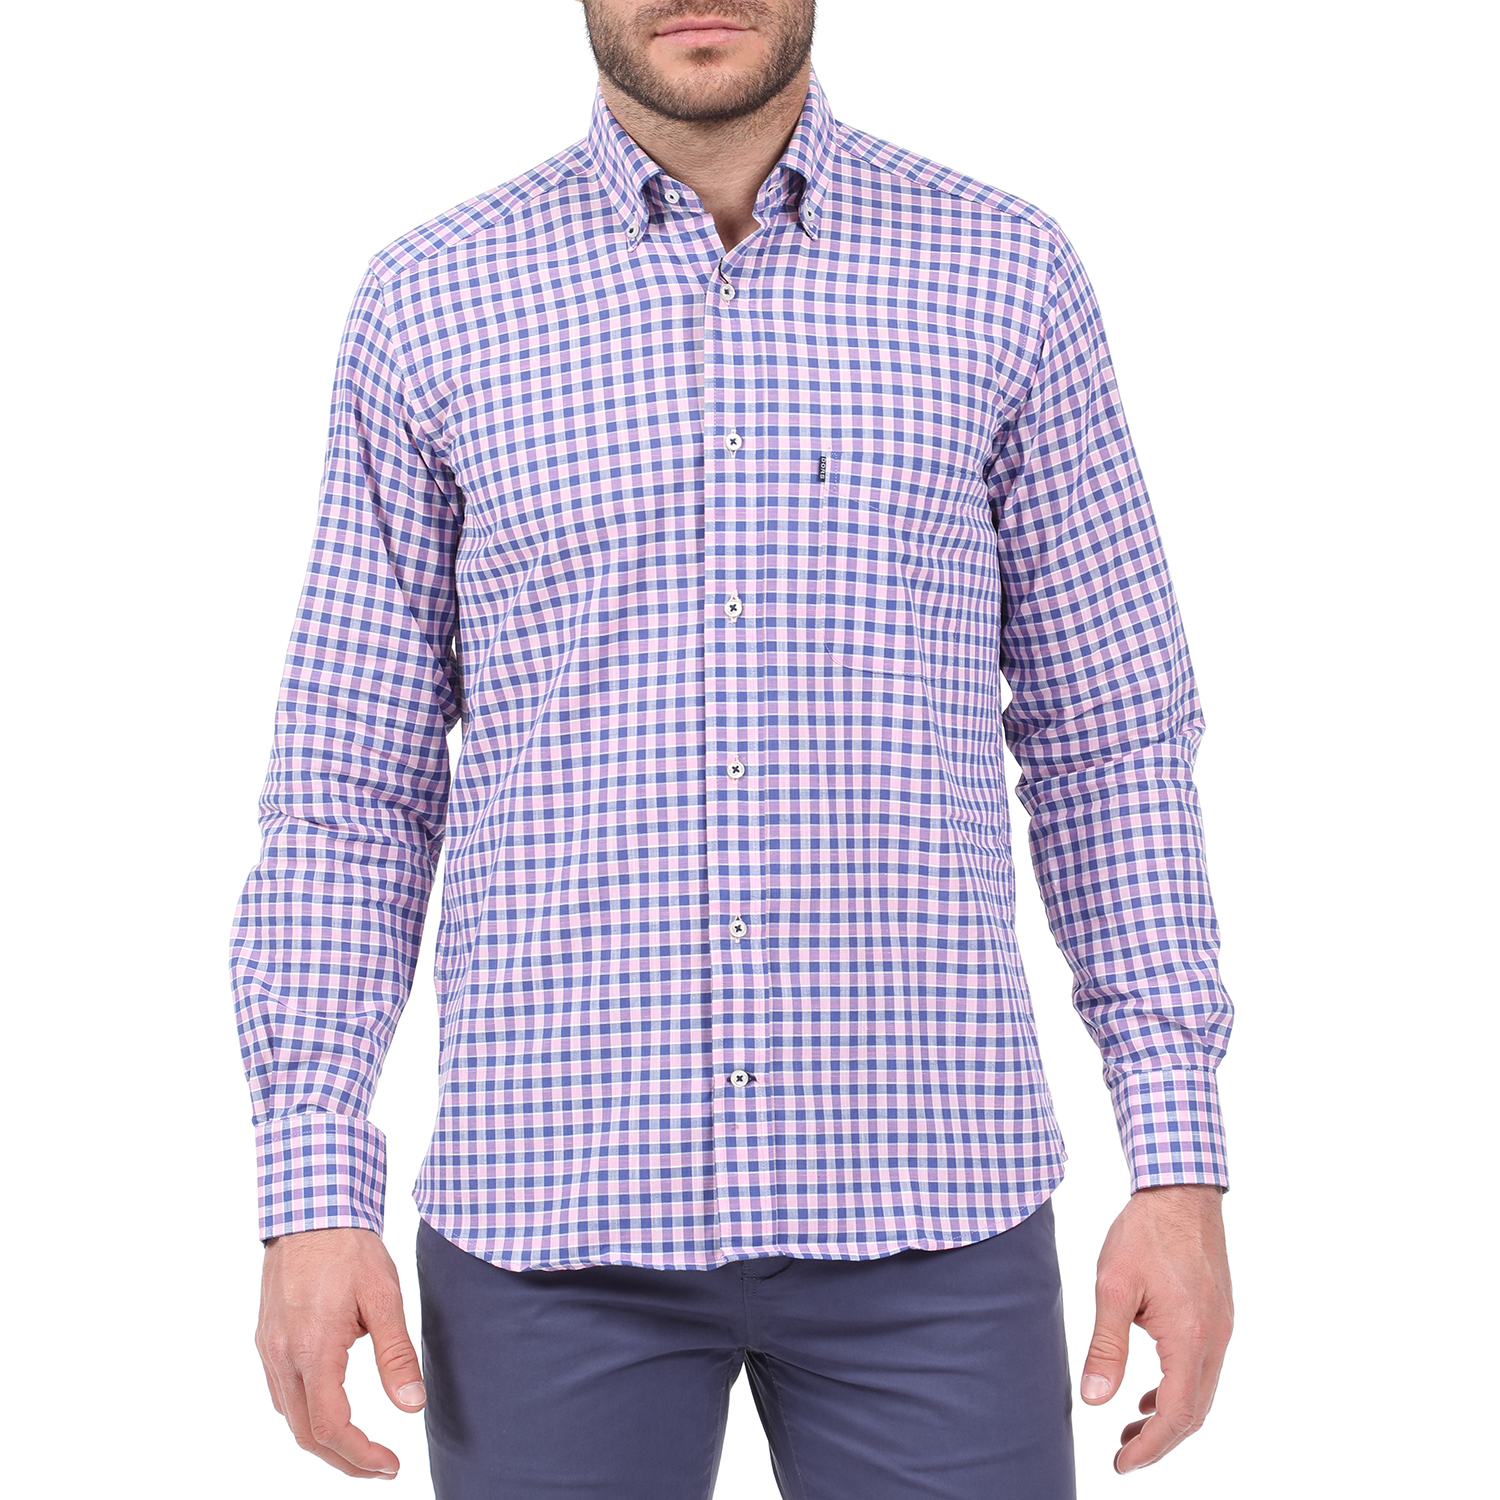 Ανδρικά/Ρούχα/Πουκάμισα/Μακρυμάνικα DORS - Ανδρικό πουκάμισο DORS μπλε ροζ